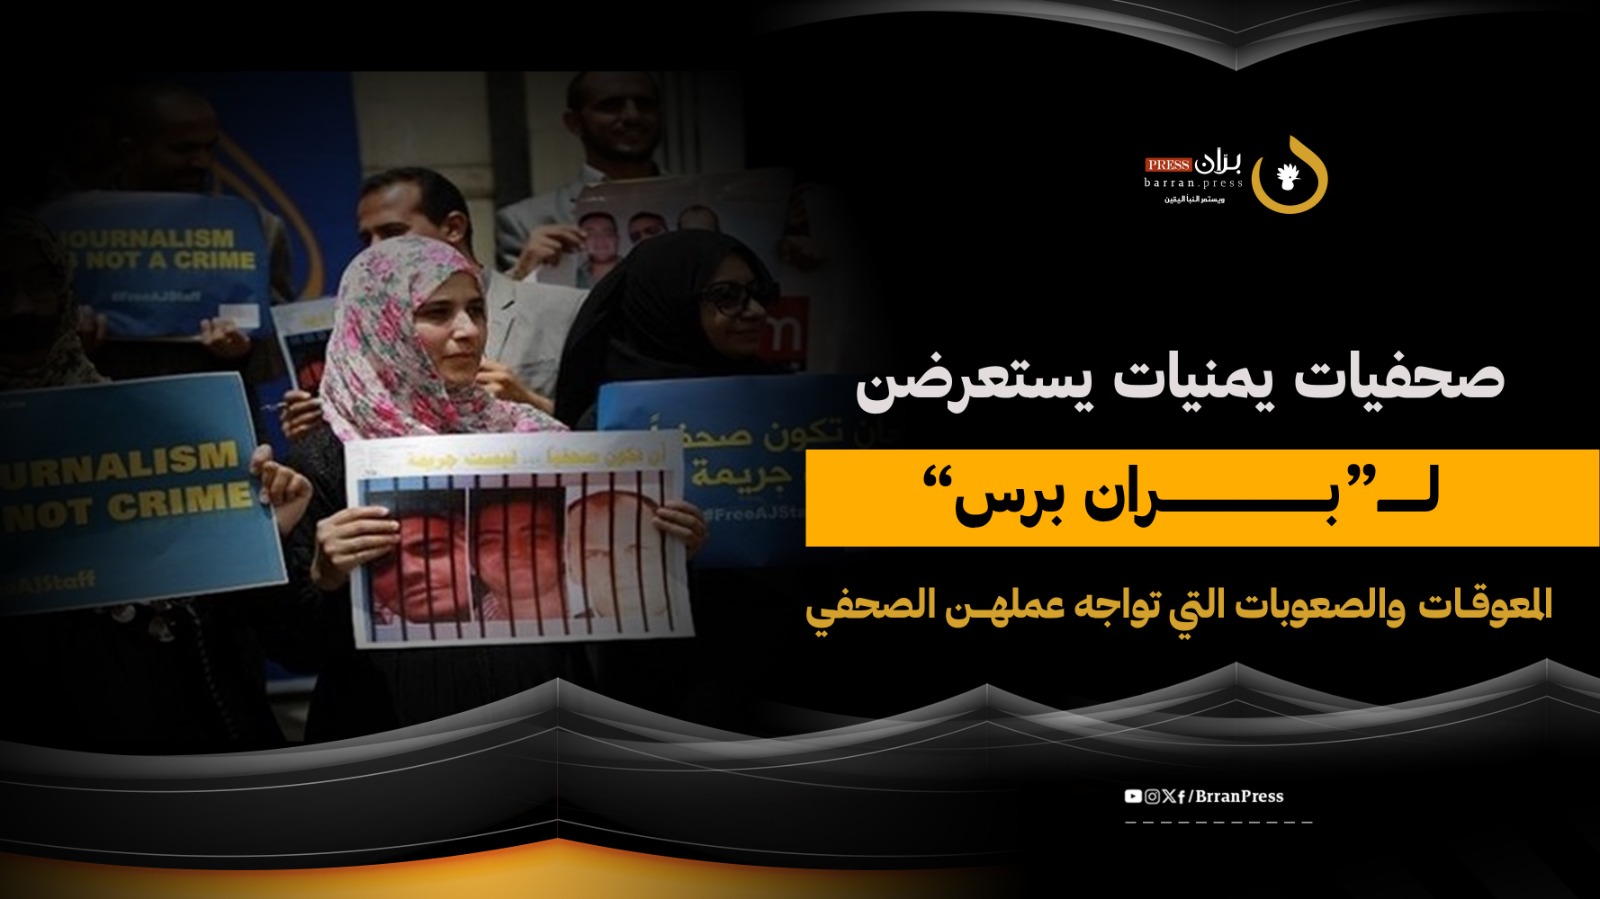 صحفيات يمنيات يستعرضن لـ“برّان برس” المعوقات والصعوبات التي تواجه عملهن الصحفي